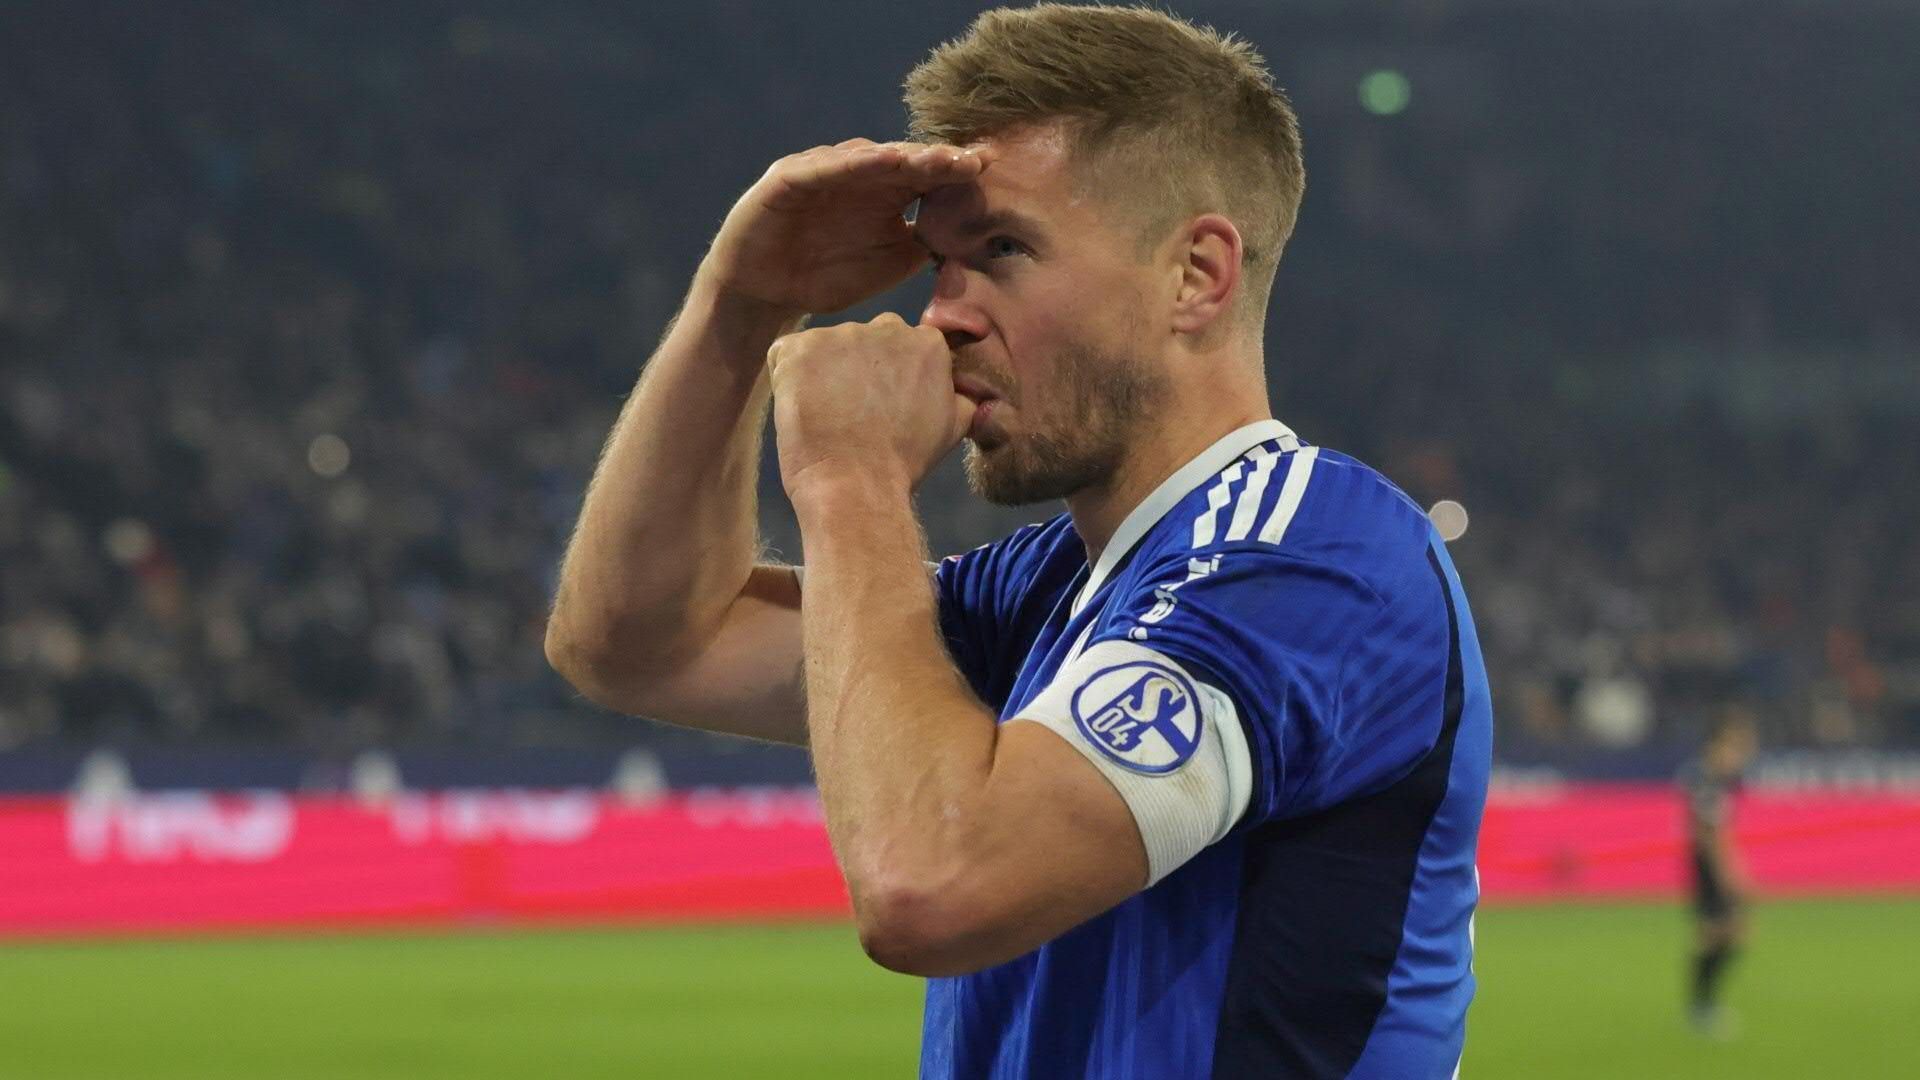 Schalke: Torjäger Terodde gibt Karriereende bekannt